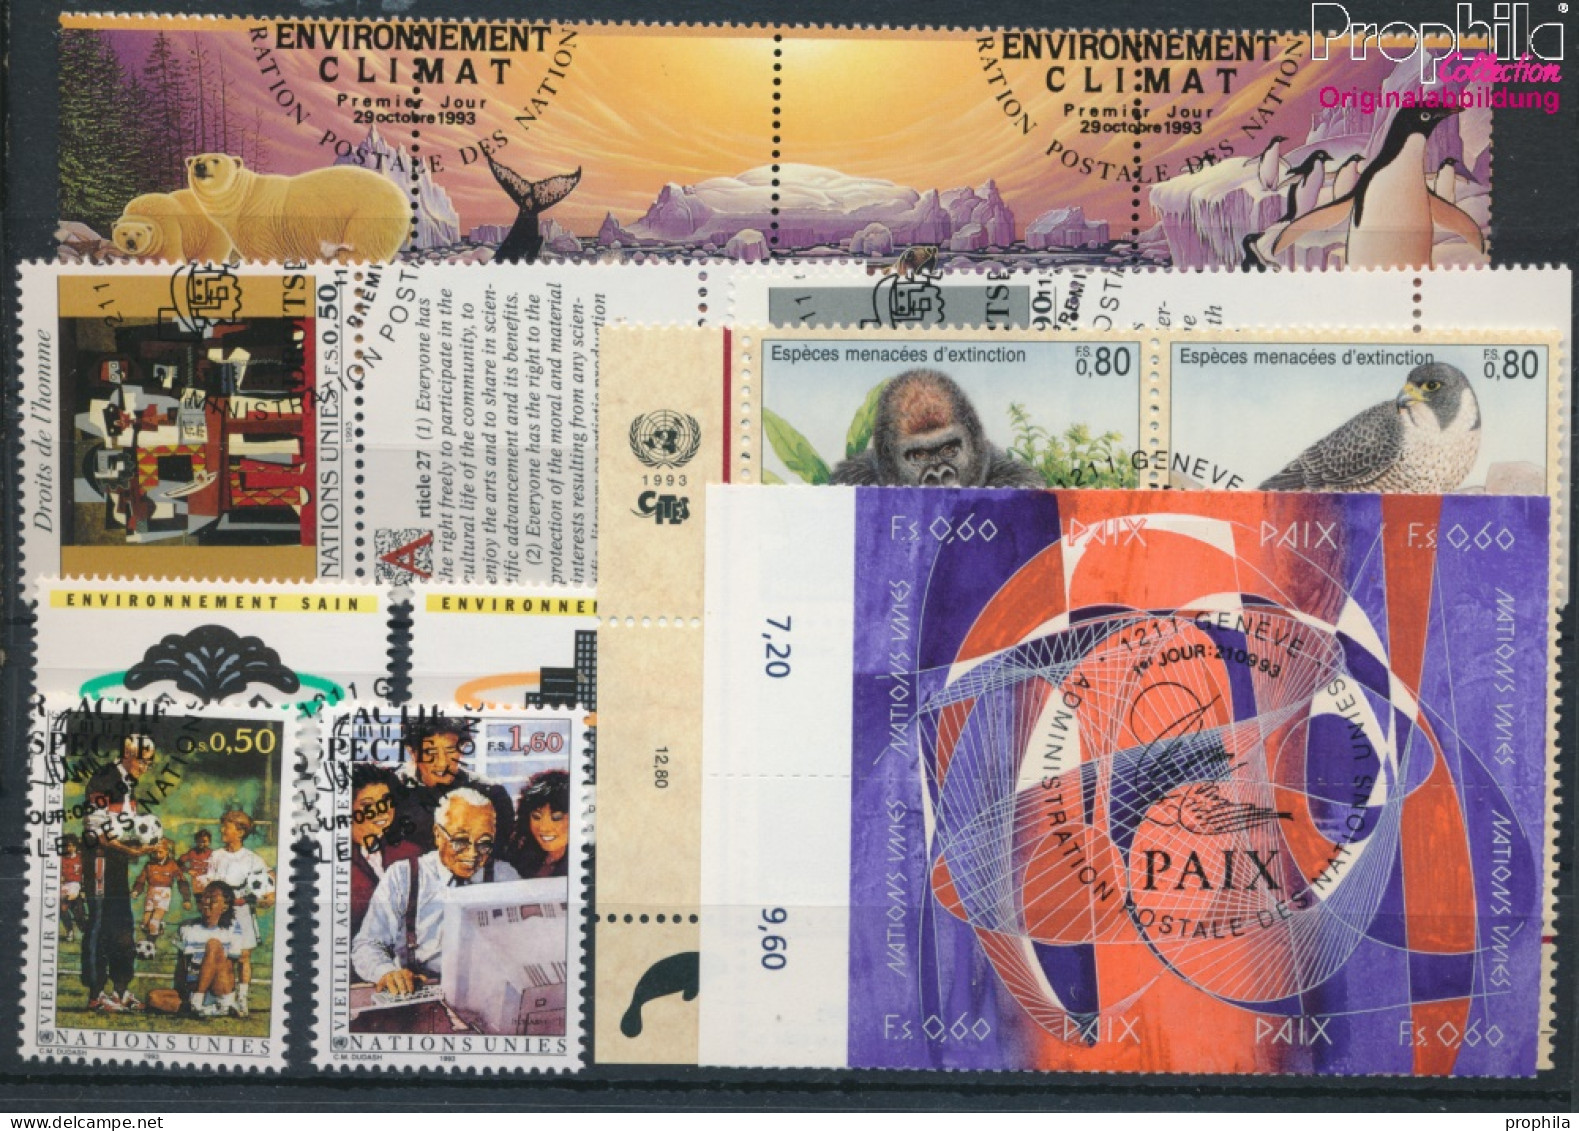 UNO - Genf Gestempelt Die Senioren 1993 Senioren, Fauna, WHO, Klima U.a.  (10054823 - Used Stamps